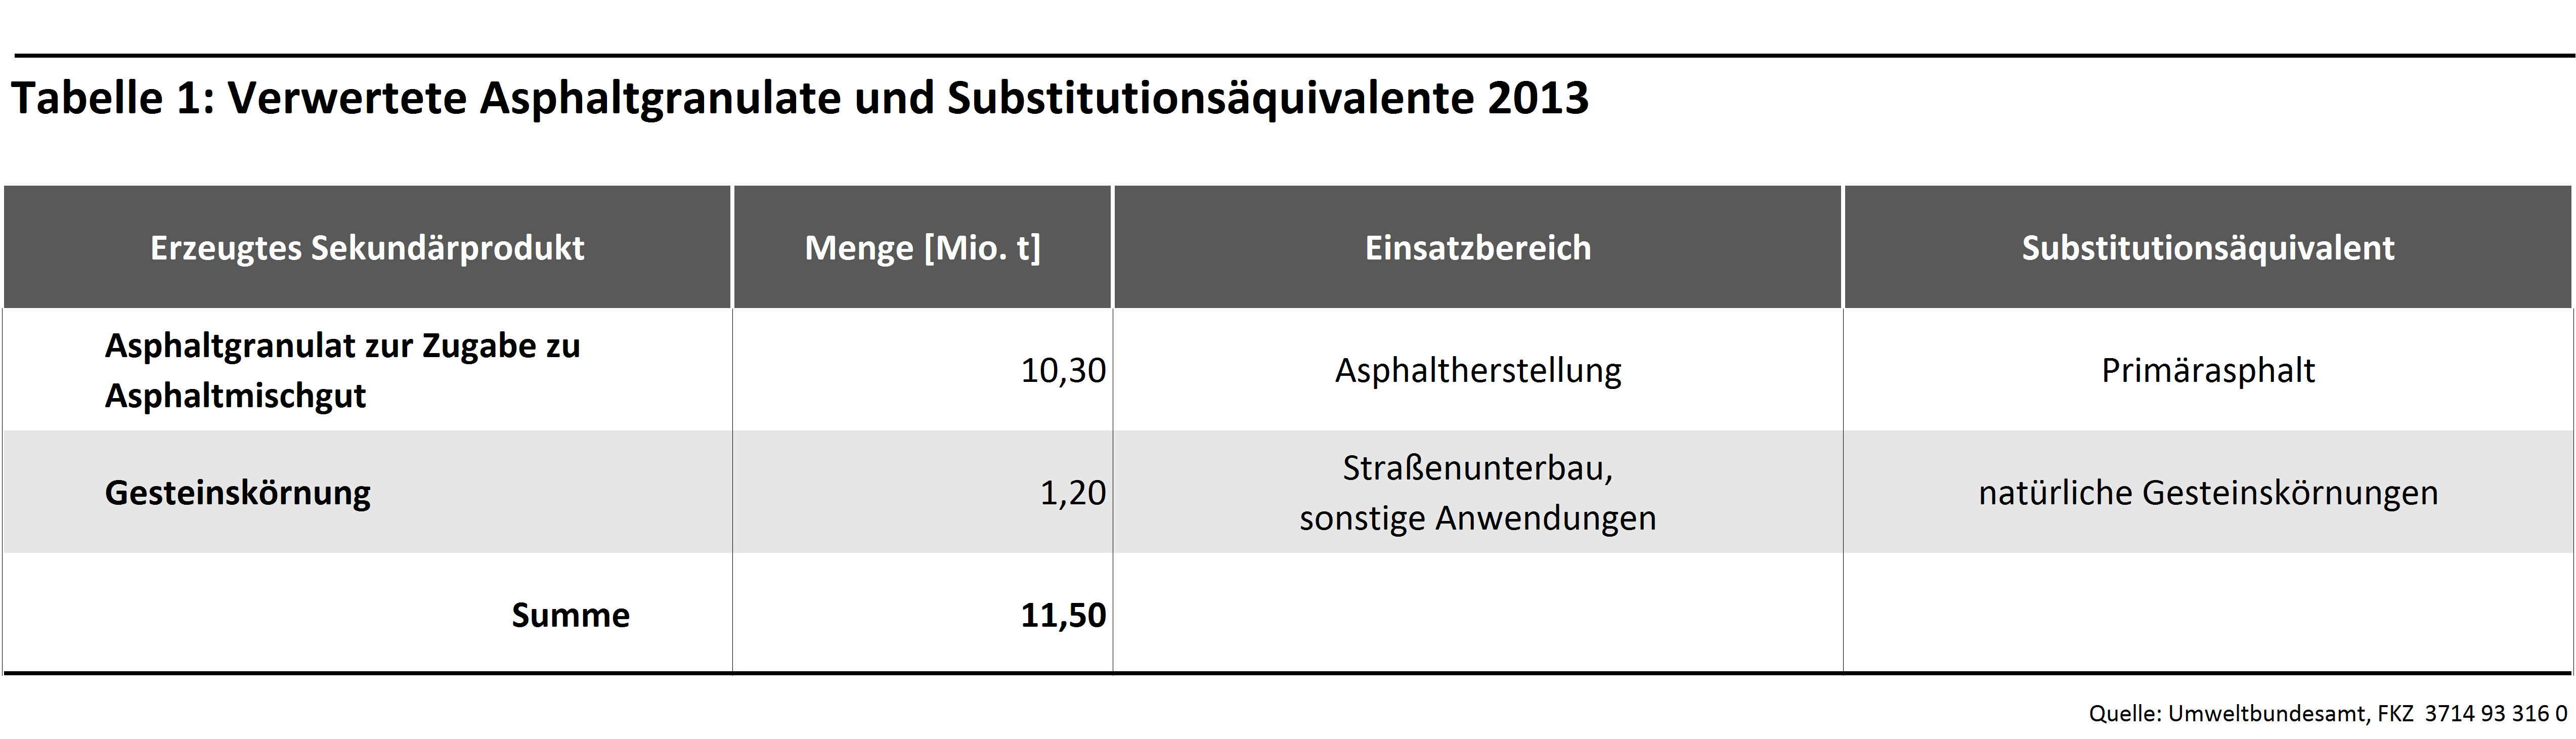 Tabelle 1: Verwertete Asphaltgranulate und Substitutionsäquivalente 2013